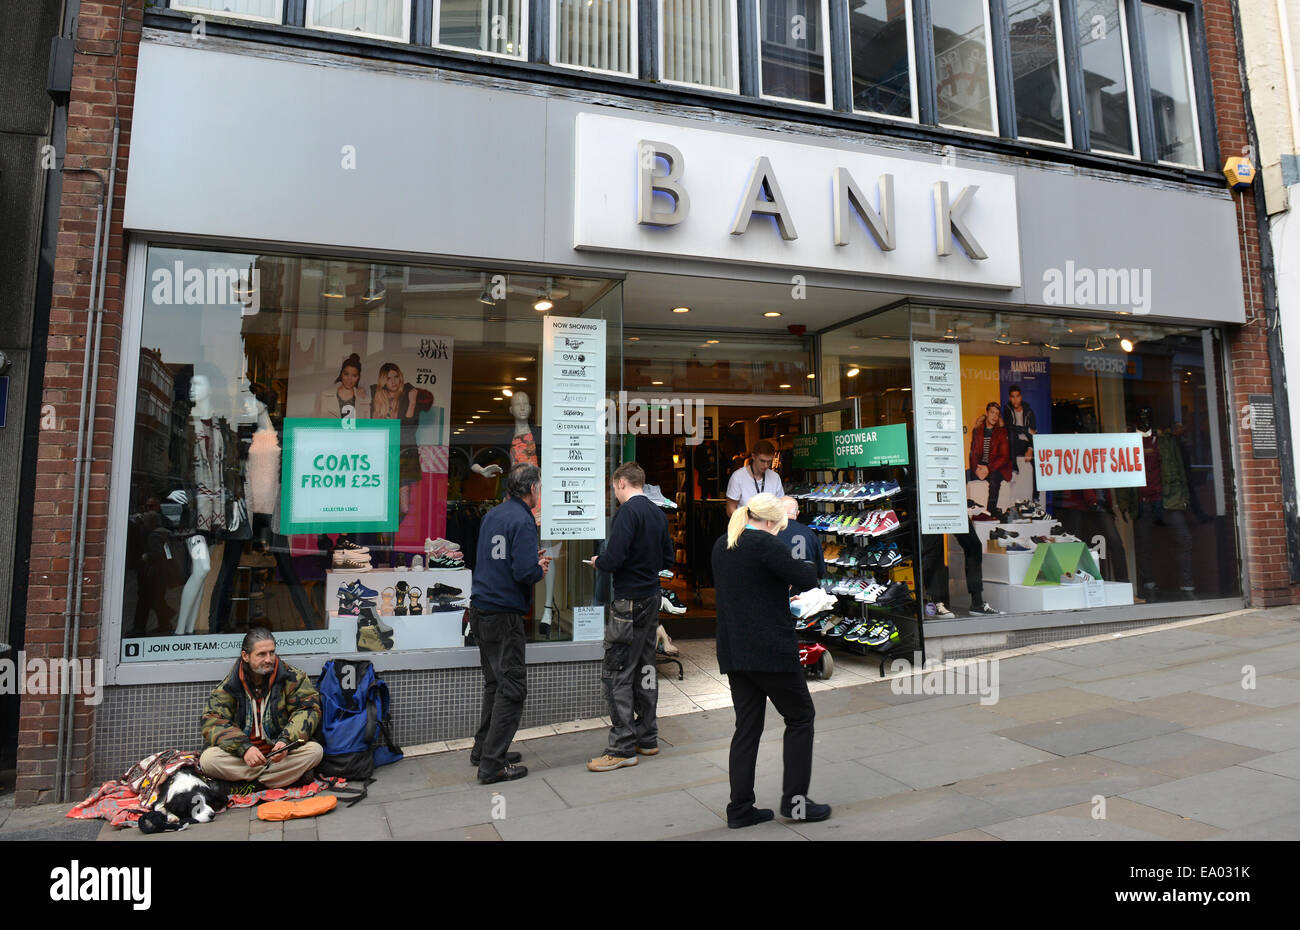 Banca Moda Fashion shop negozi store memorizza Shrewsbury Regno Unito Foto Stock